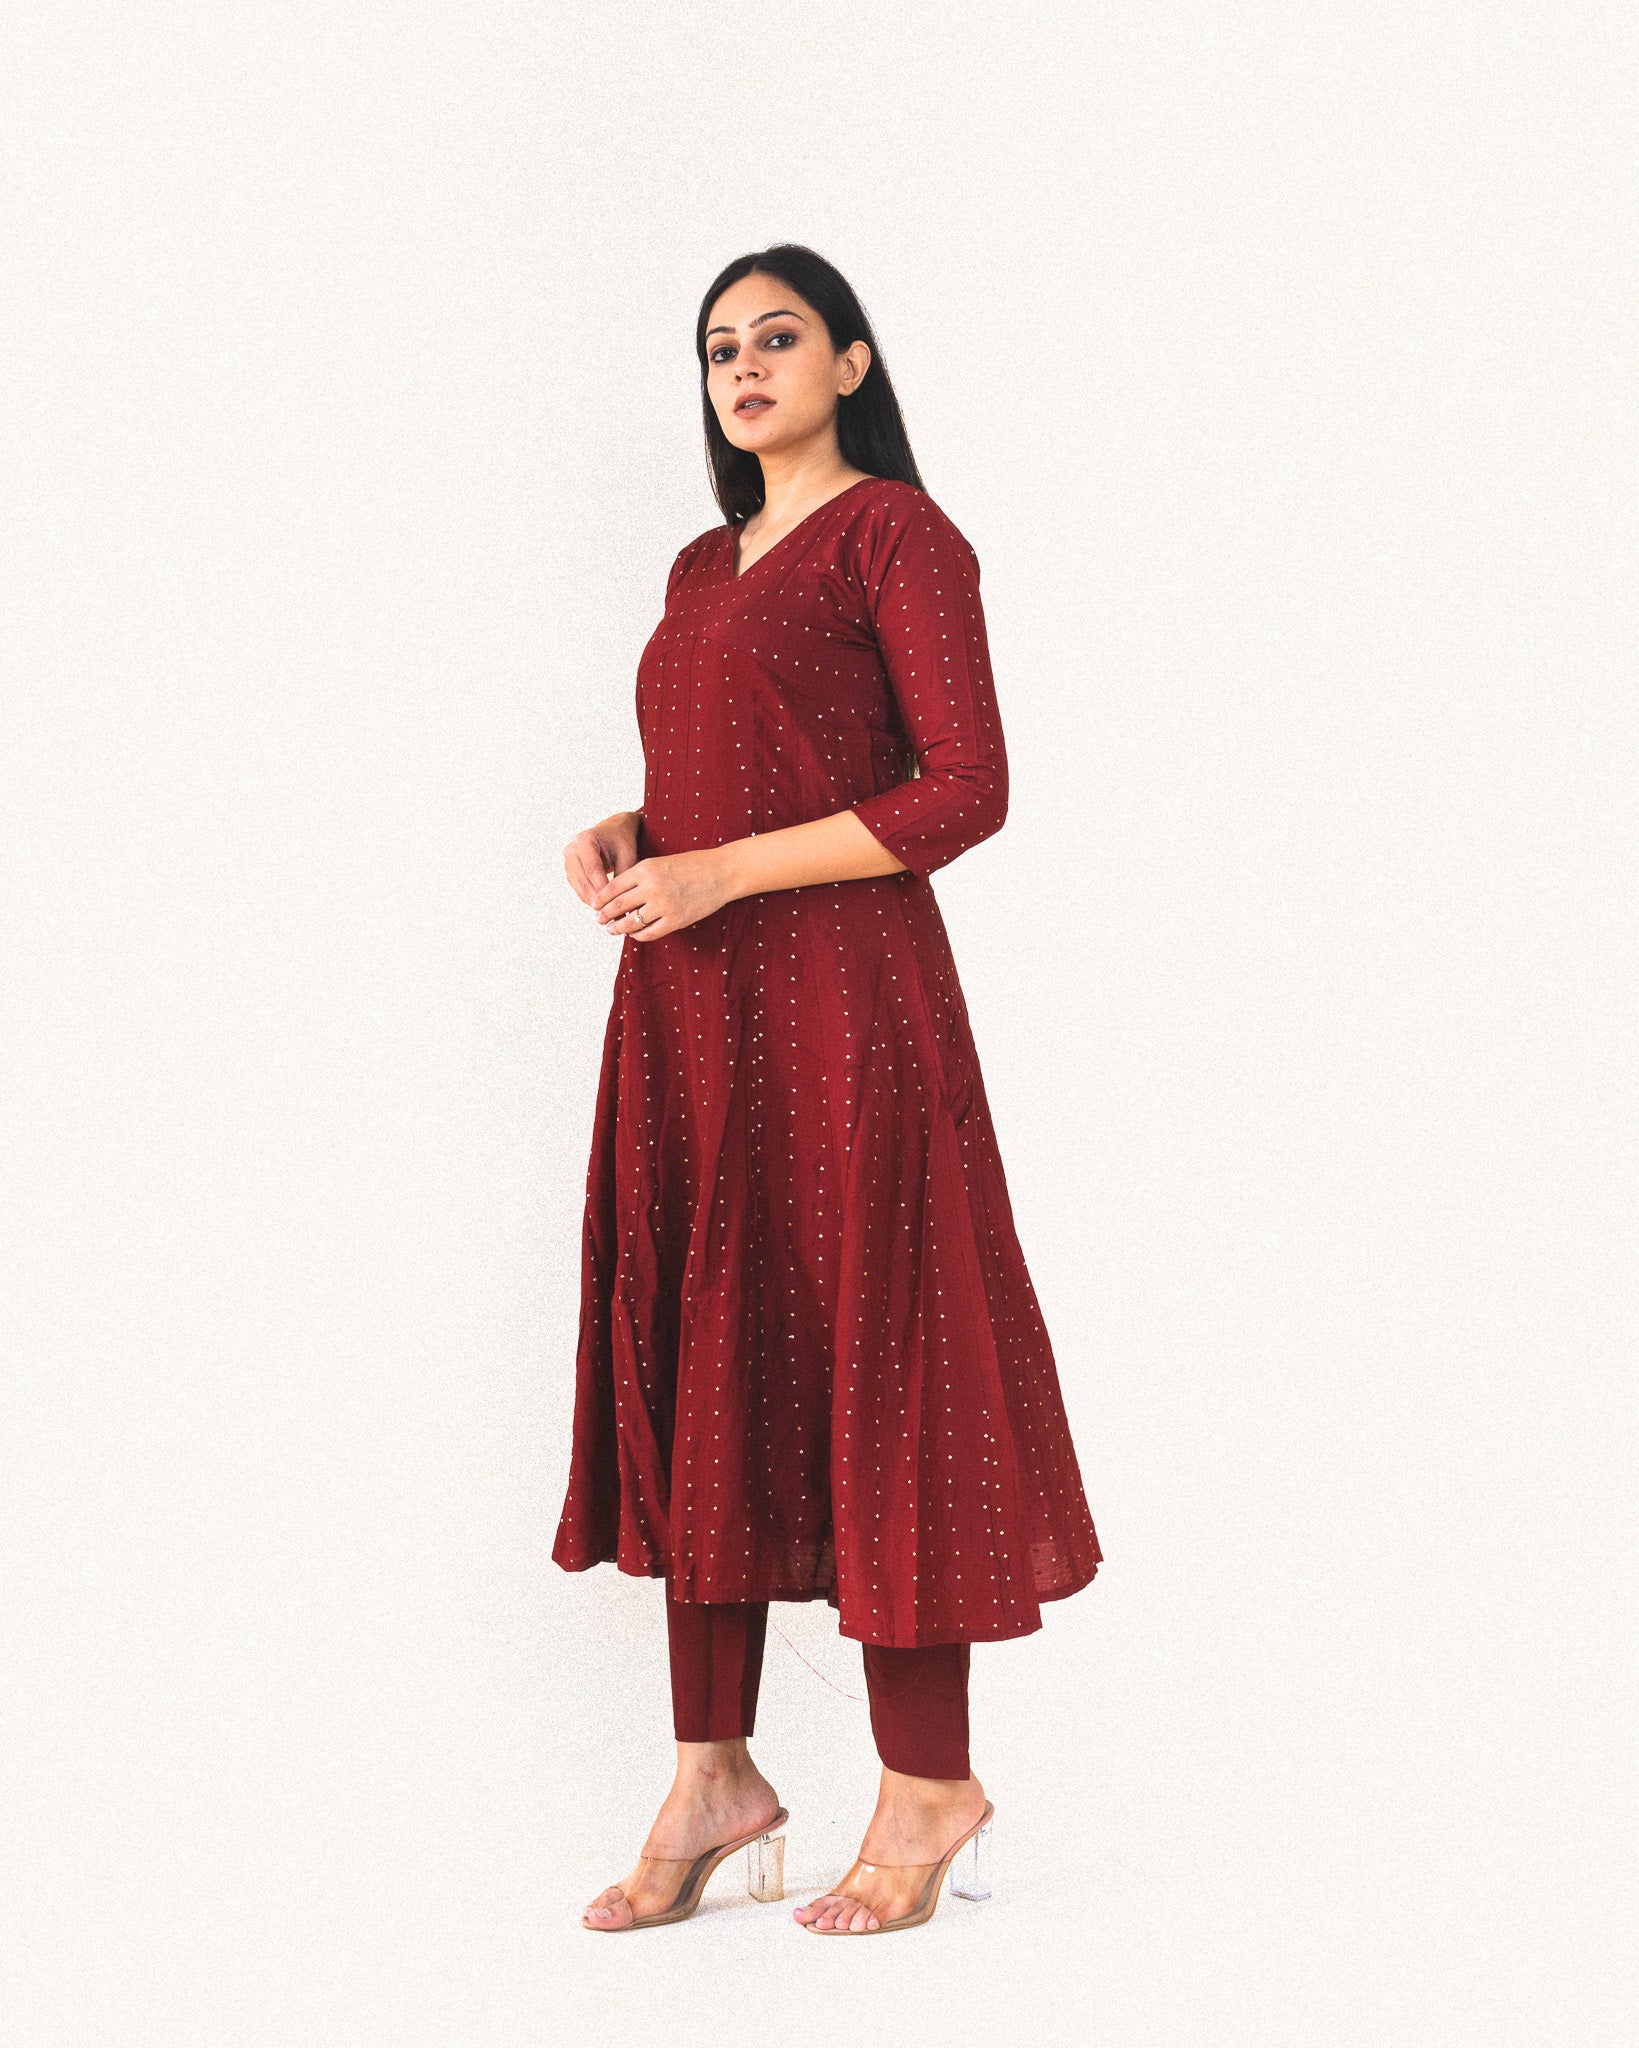 kurti with pant | Stylish dress designs, Stylish dresses, Trendy dress  outfits